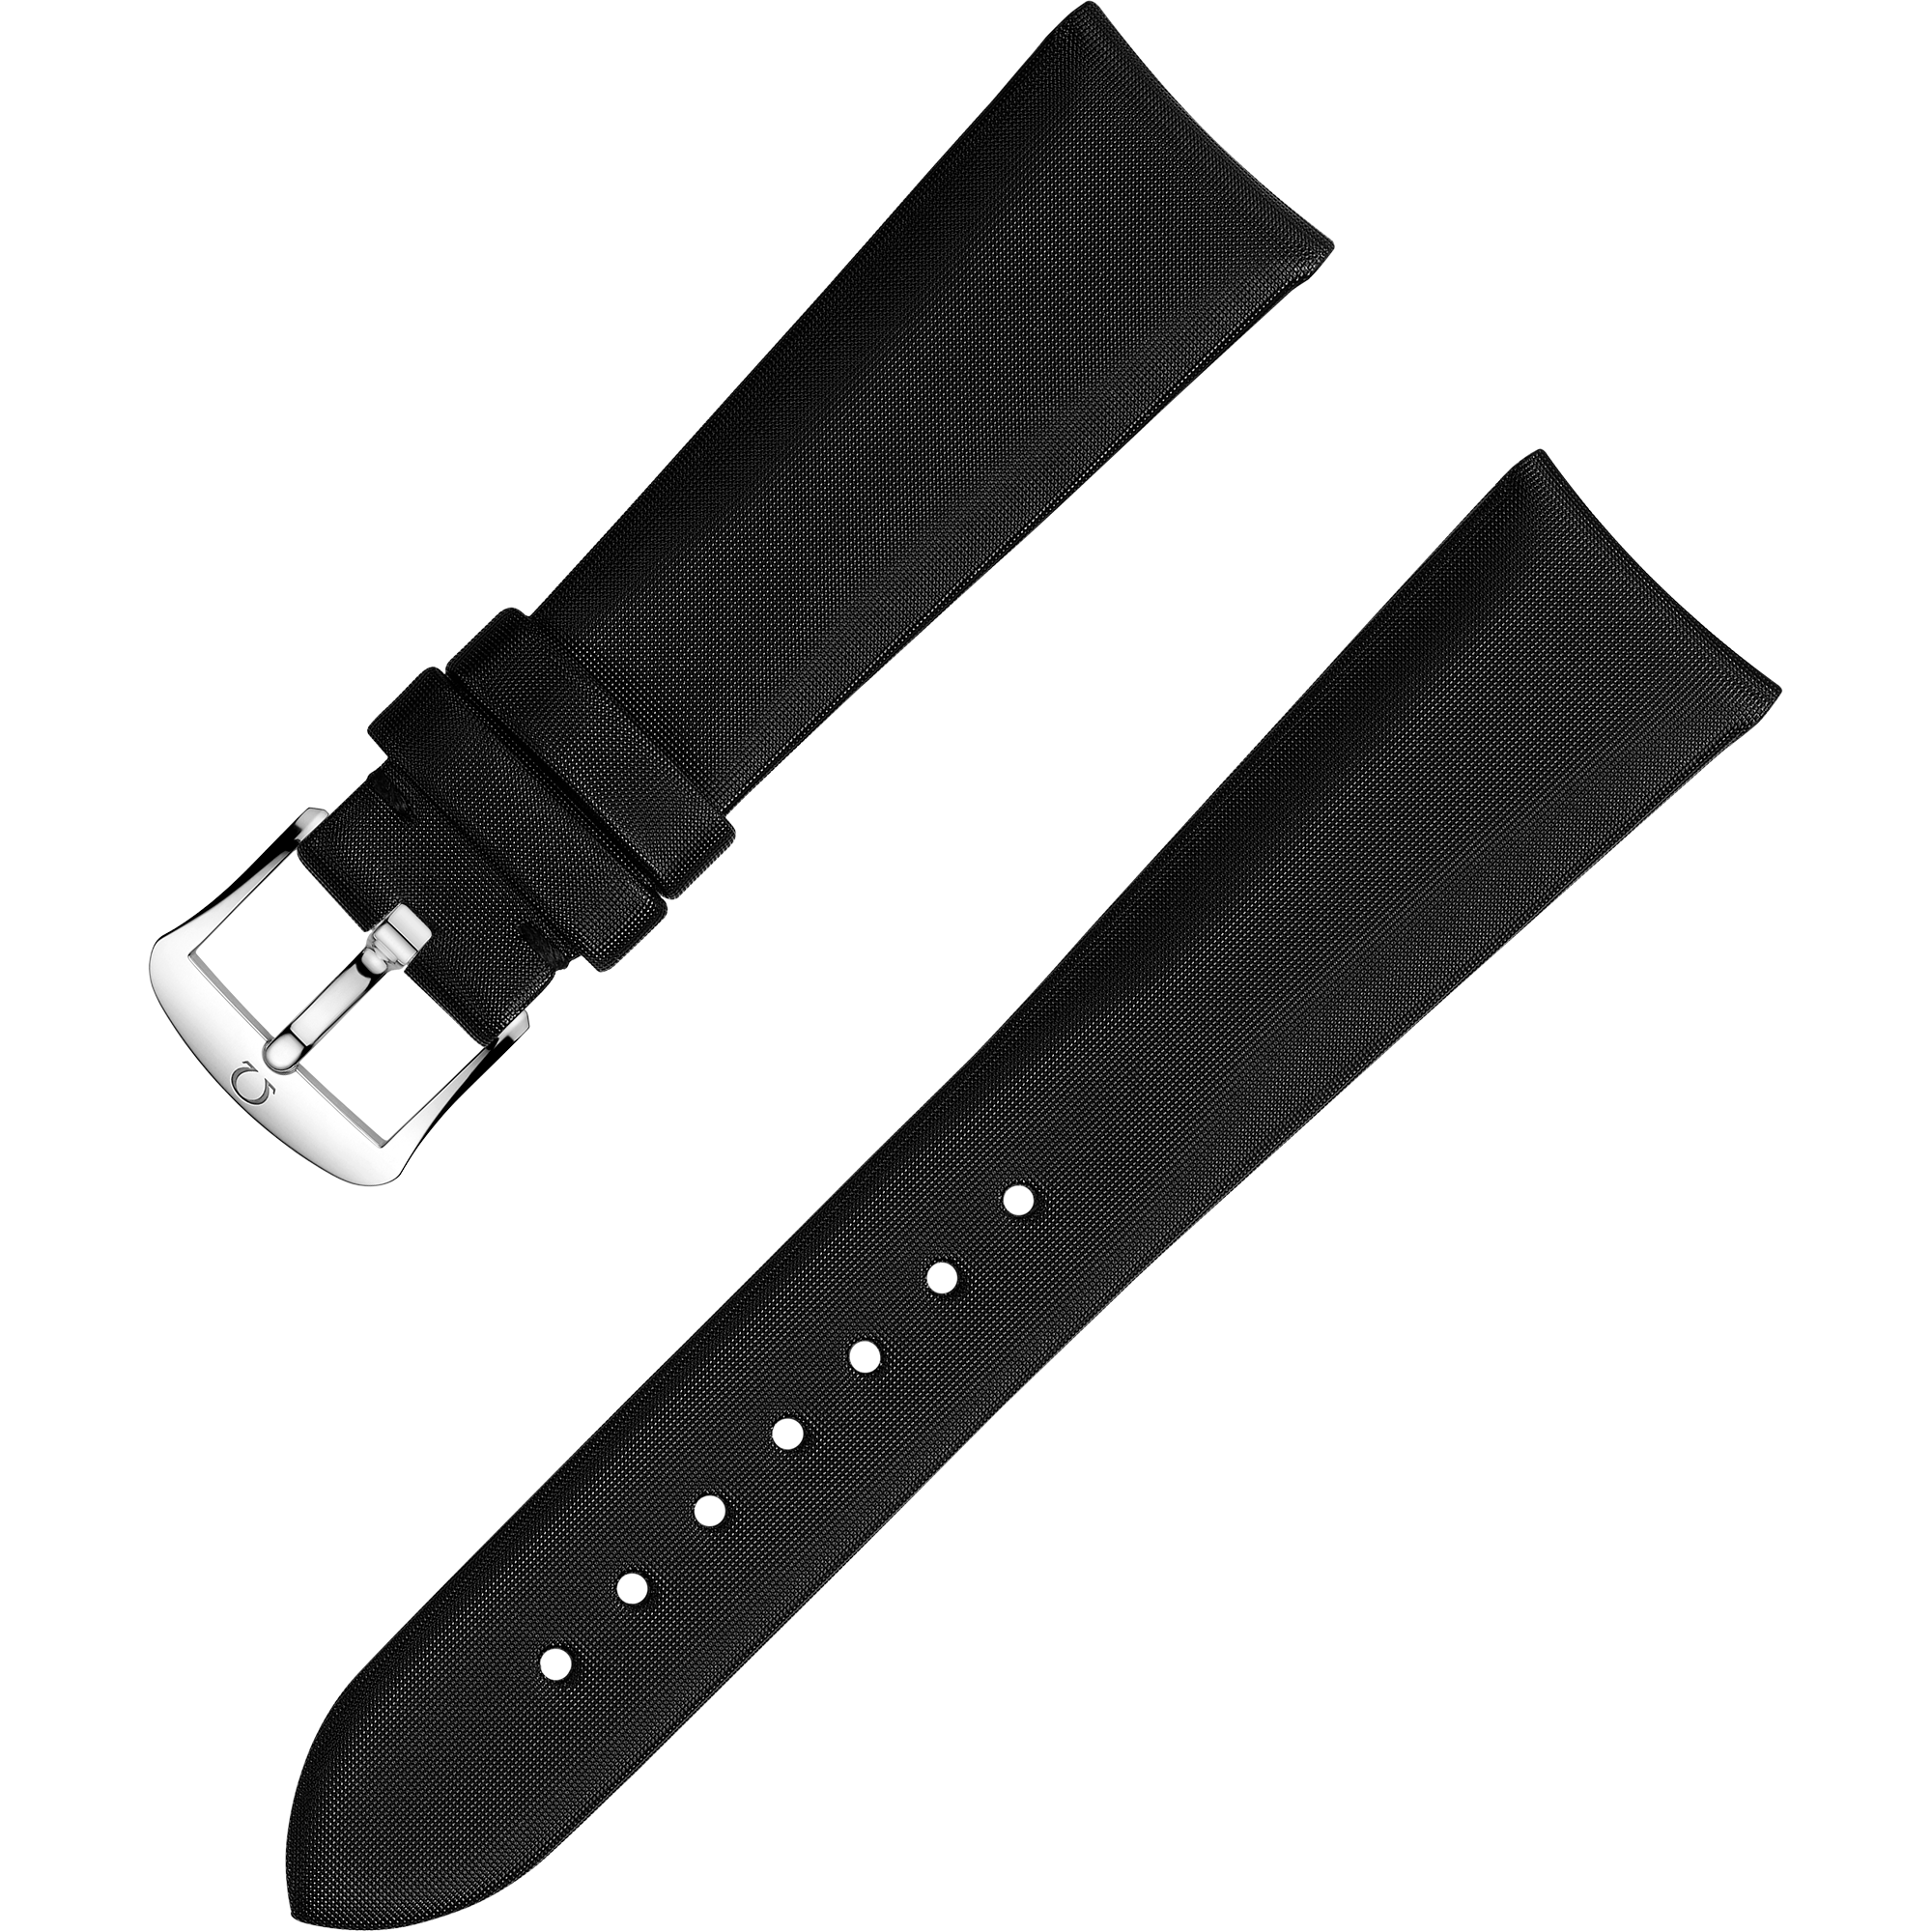 สายนาฬิกาแบบสองชิ้น - สายสีดำผิวซาตินที่ผลิตด้วยกระบวนการทางเทคโนโลยี - 032CWZ010000